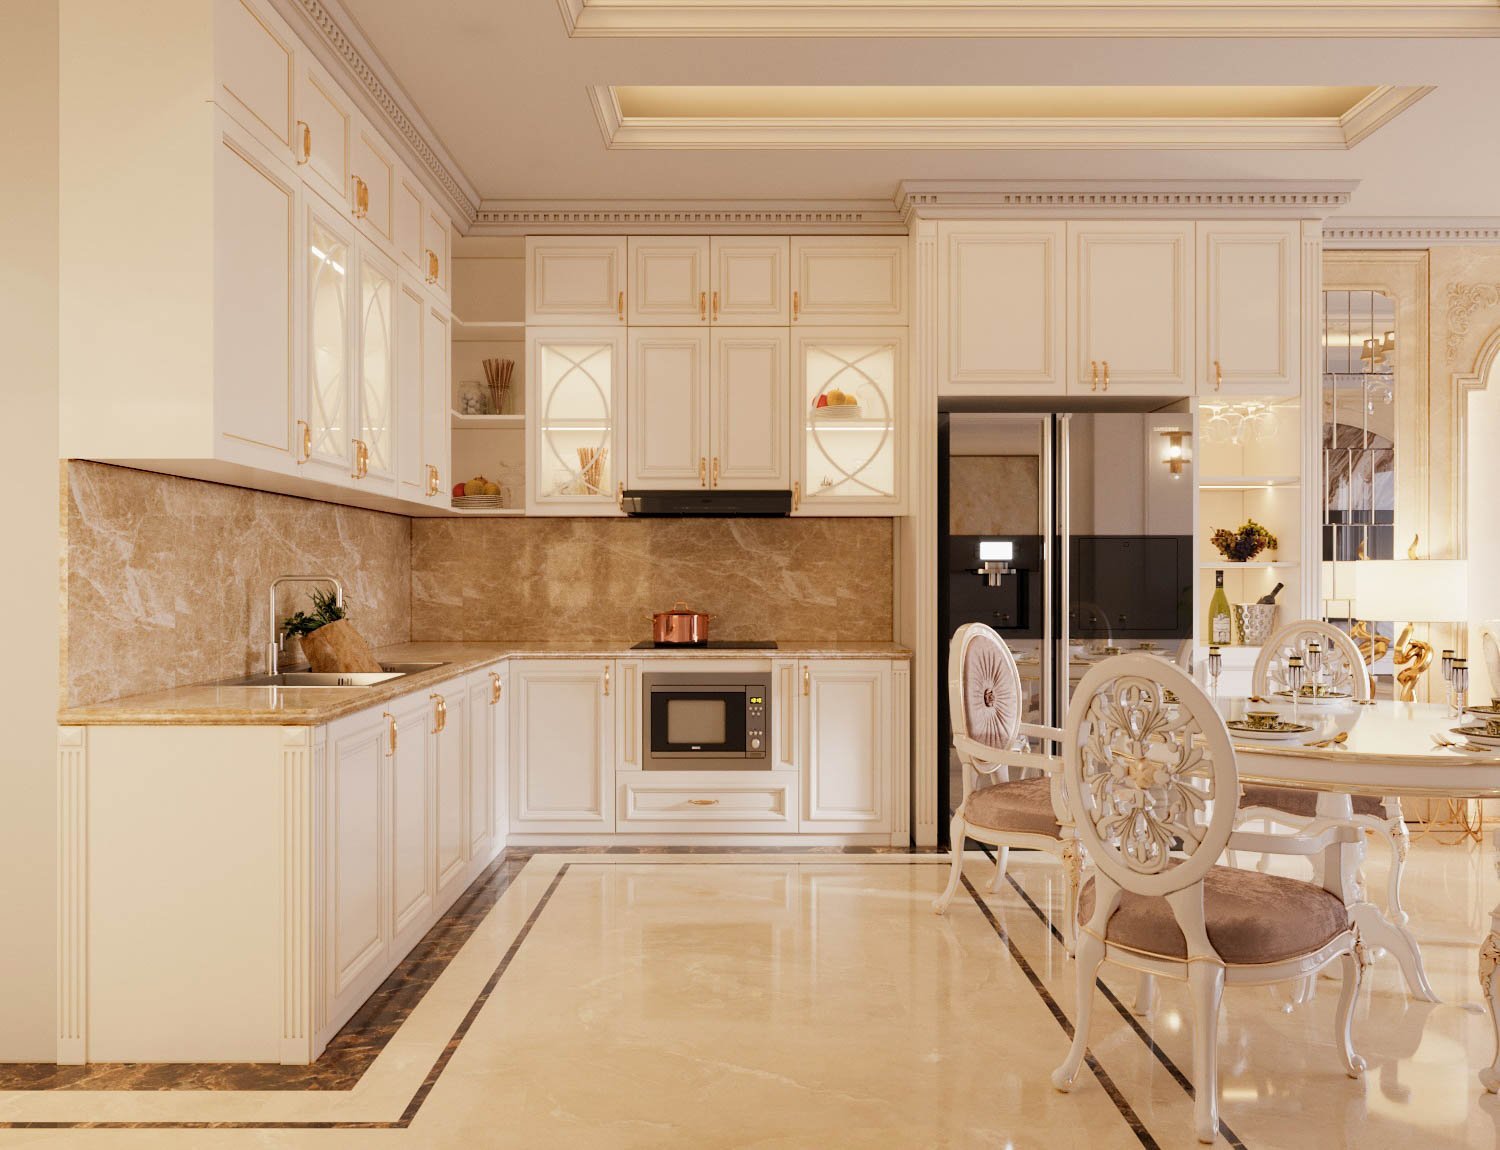 Không gian bếp kết hợp phòng ăn được bài trí với nội thất tông màu vàng, trắng chủ đạo. Tường ngăn phòng "biến mất" tạo cảm giác rộng rãi, thoáng sáng hơn.